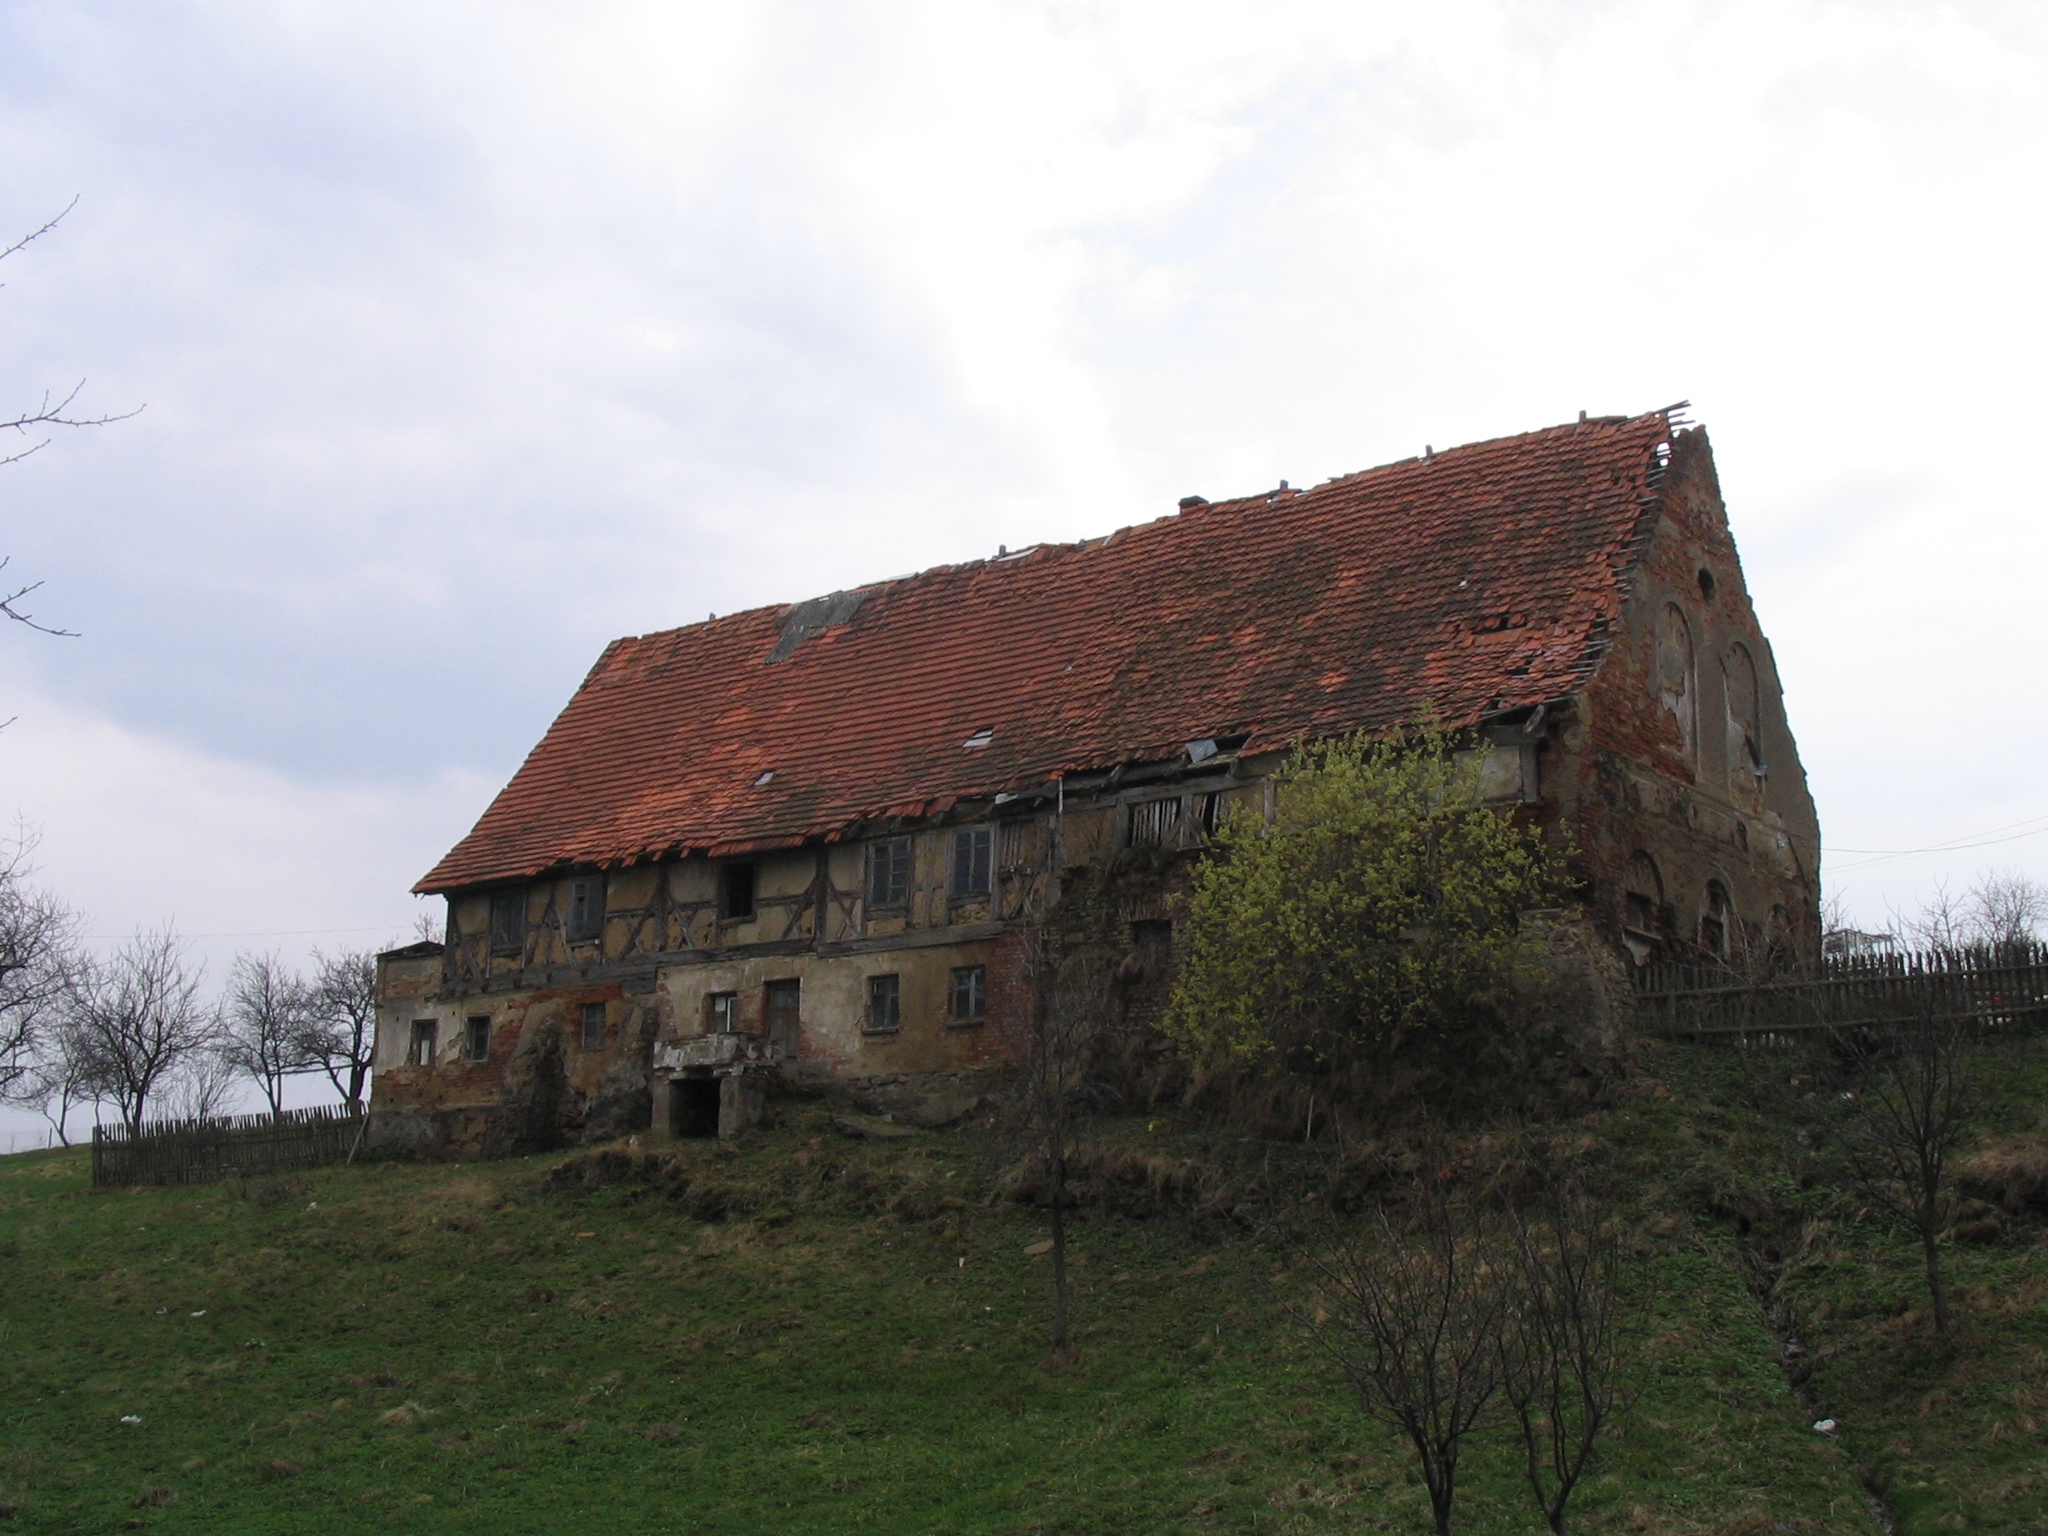 File:Niedzwiedzice old german house.jpg - Wikimedia Commons